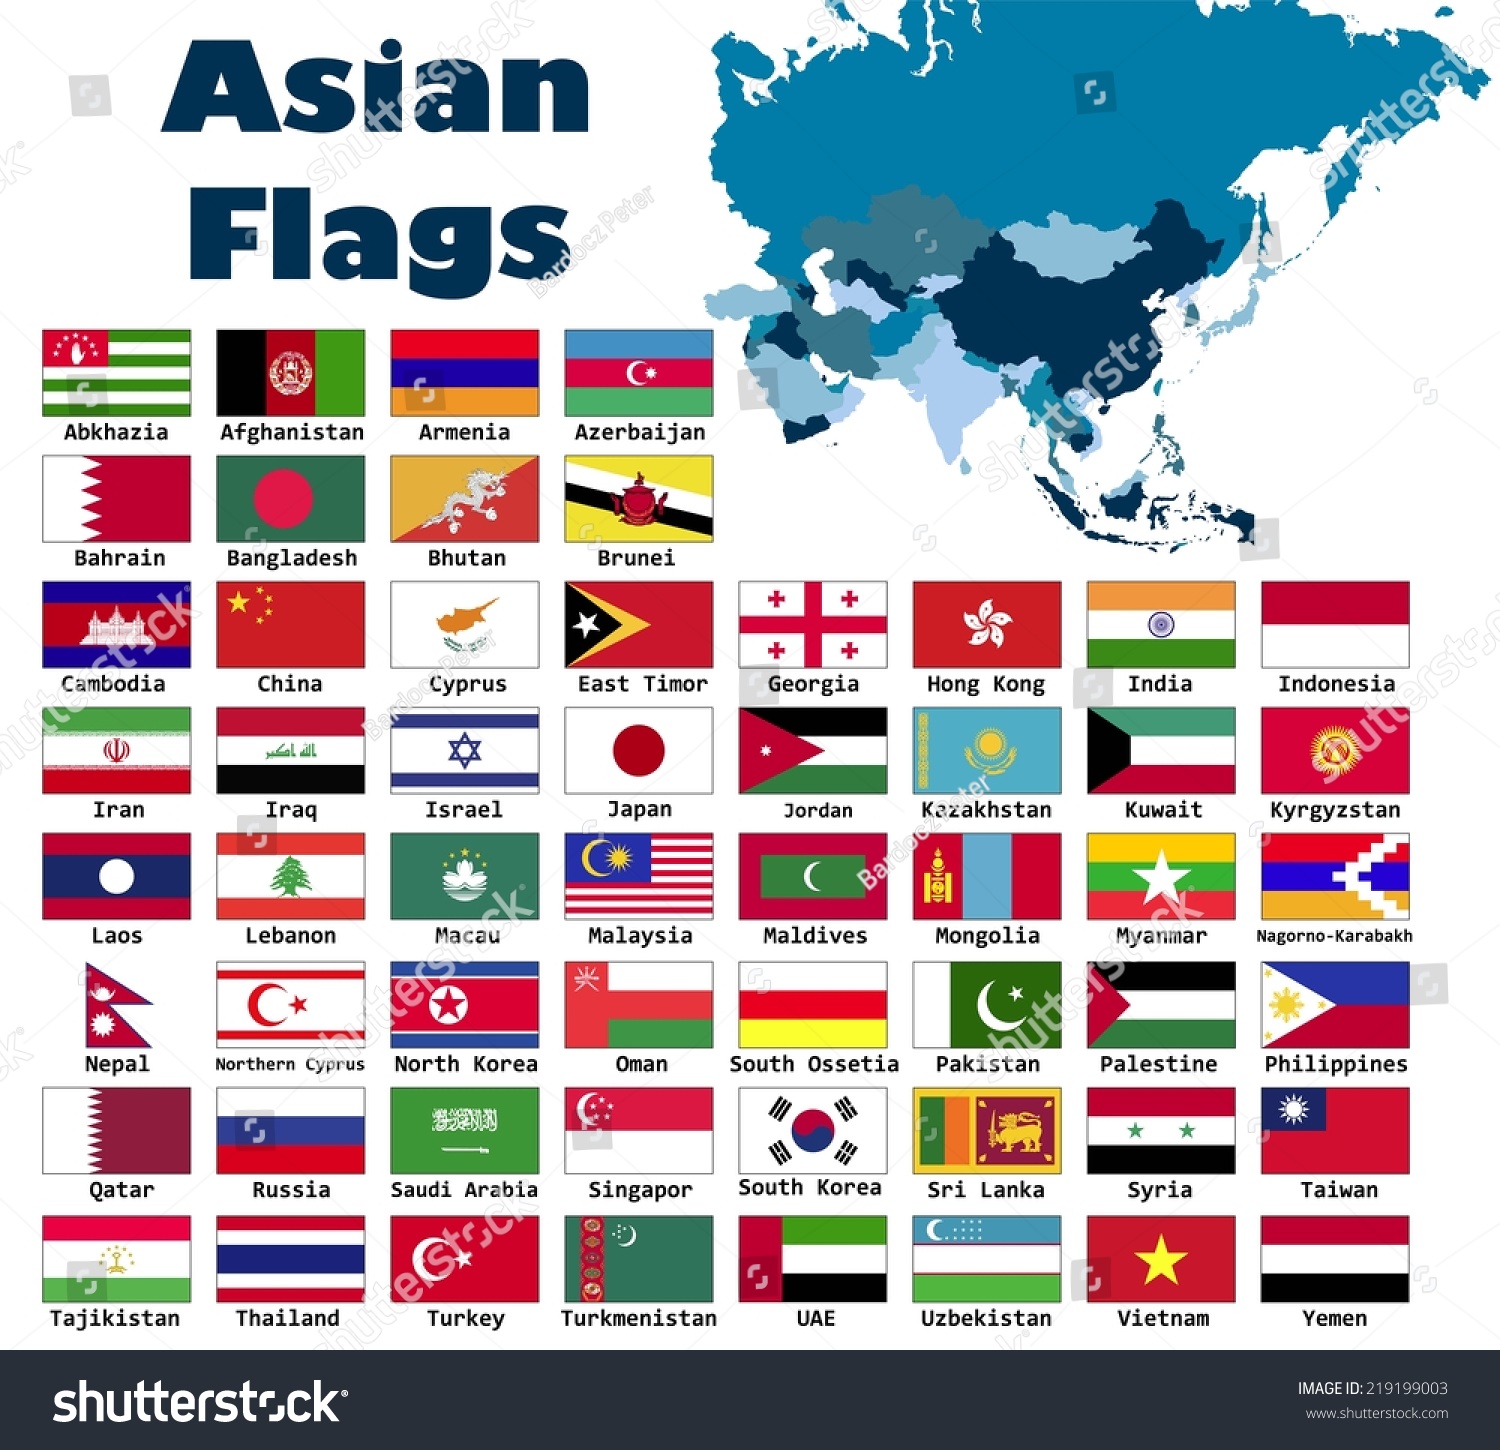 Флаги среднеазиатских республик фото с названиями